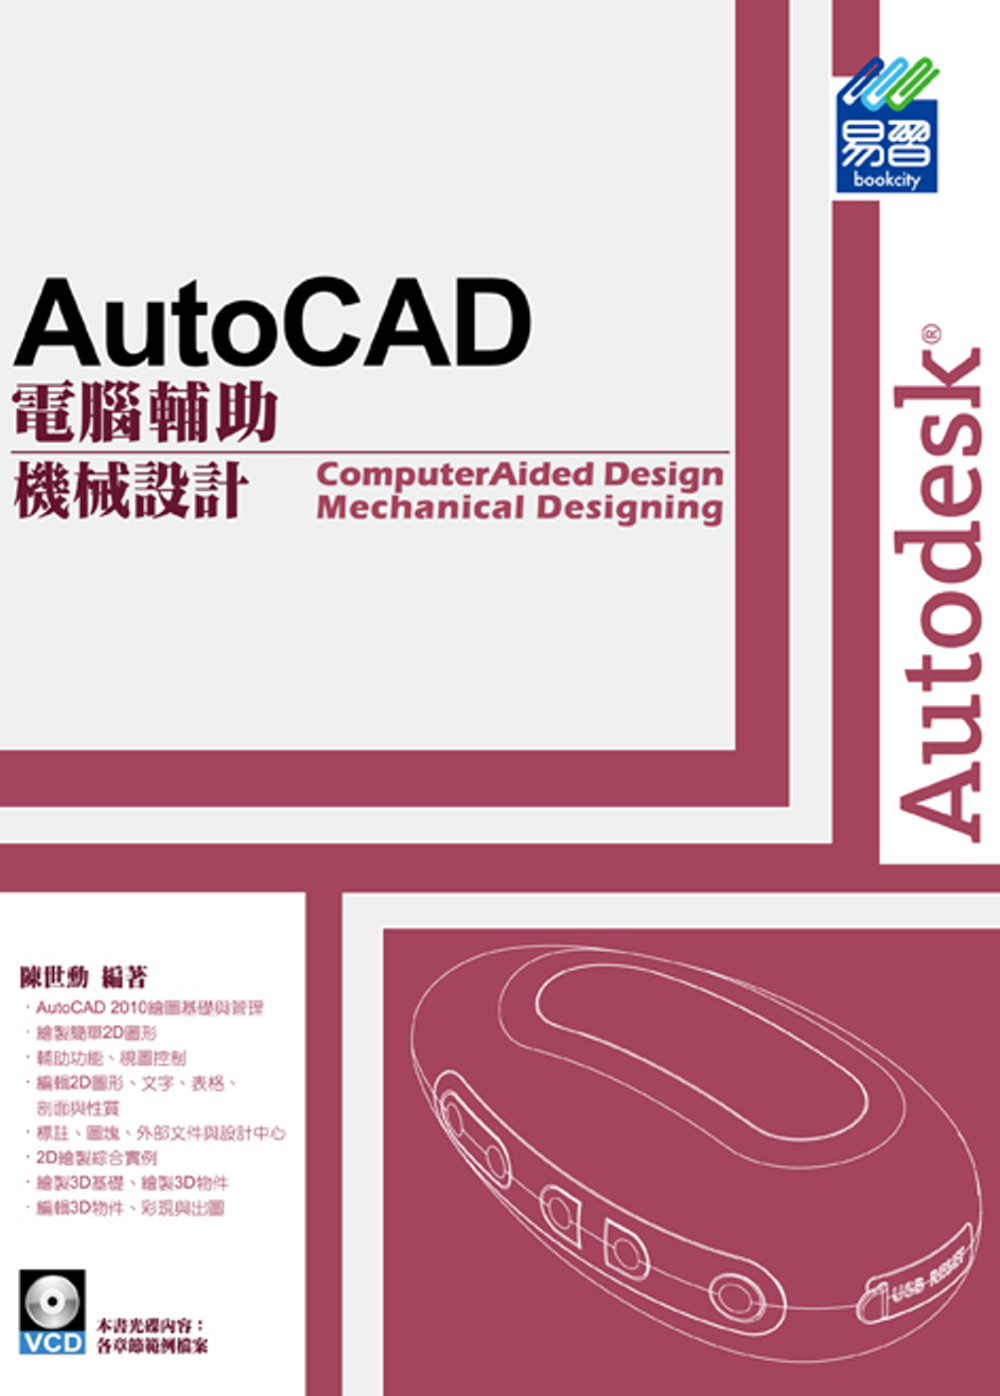 AutoCAD 電腦輔助機械設計...